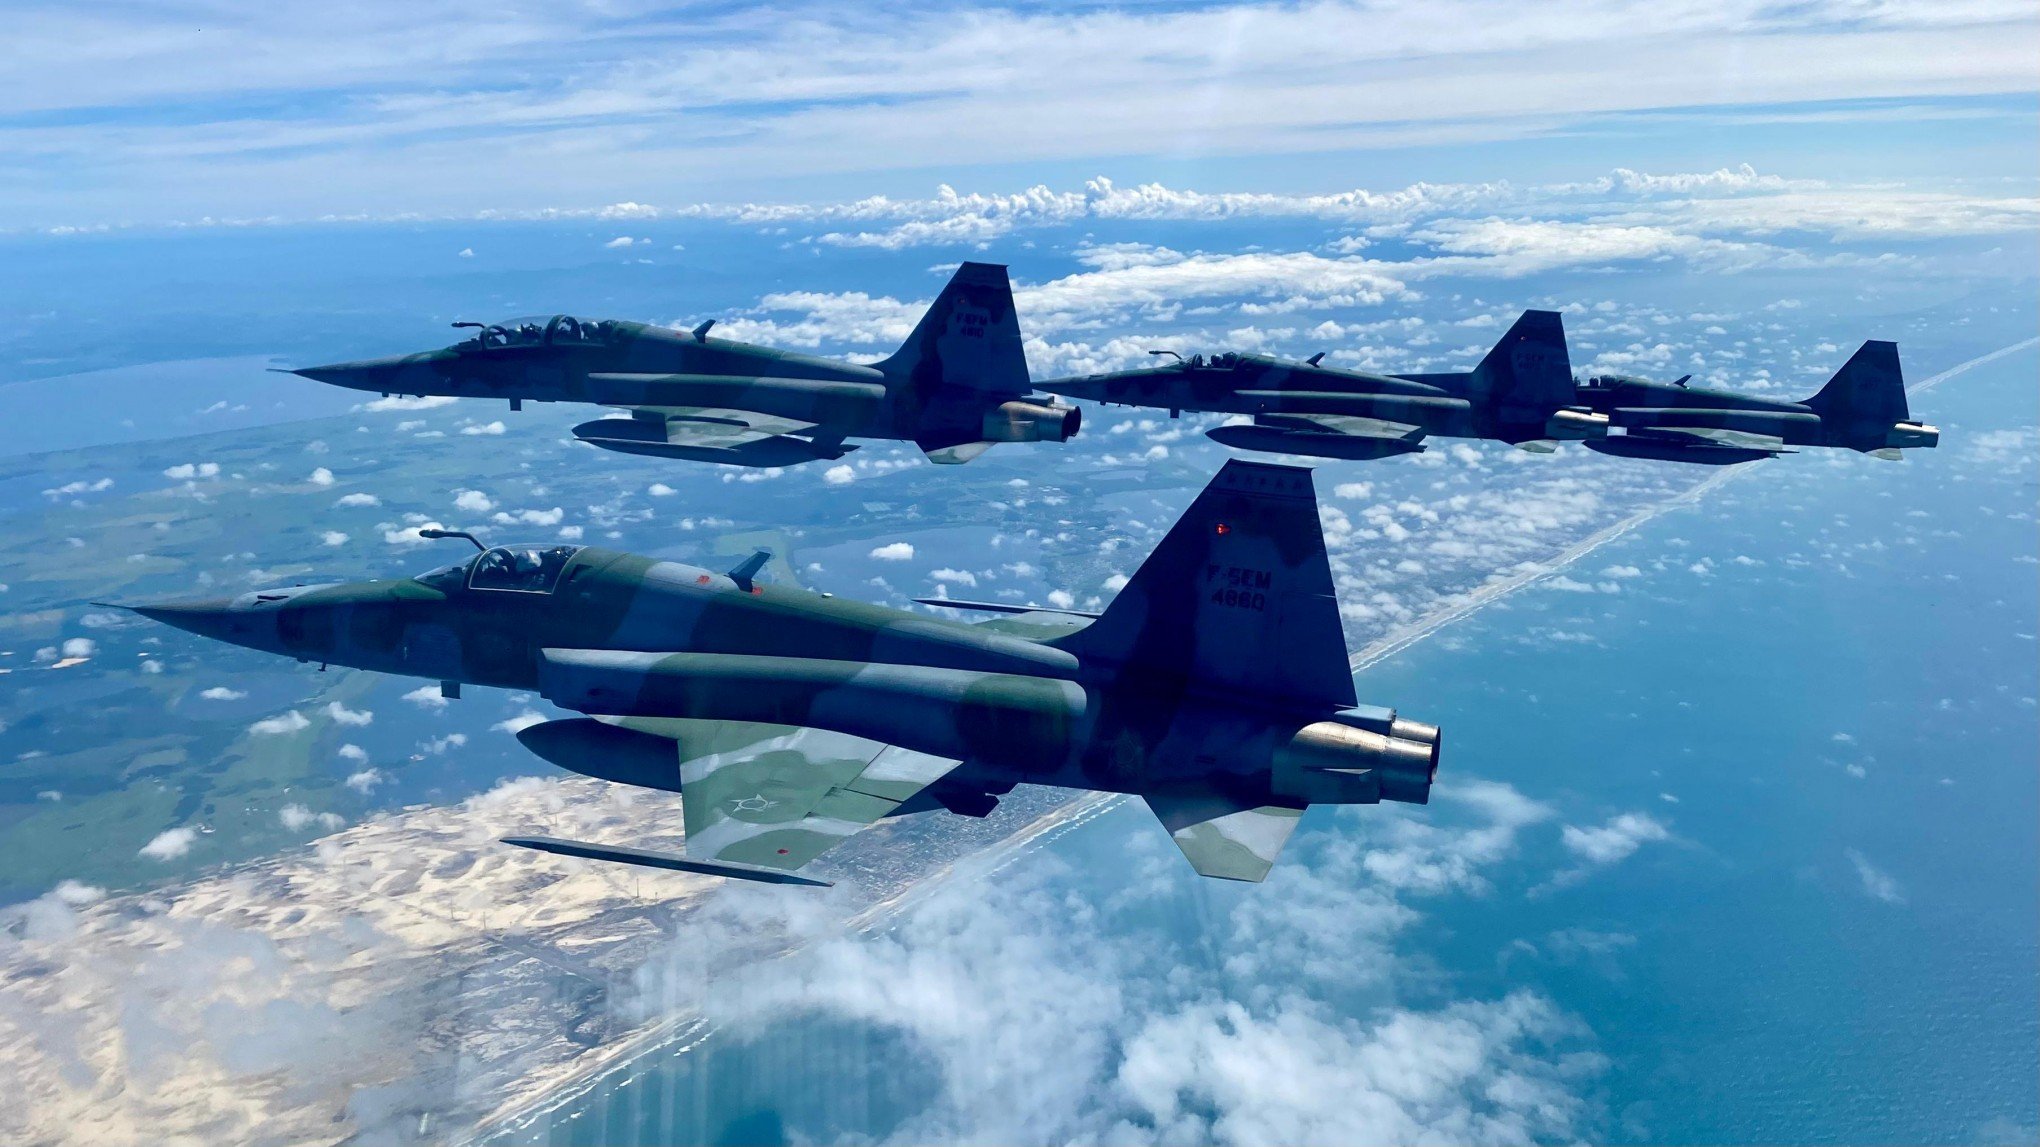 F-5 do Esquadrão Pampa atinge 100 mil horas de voo